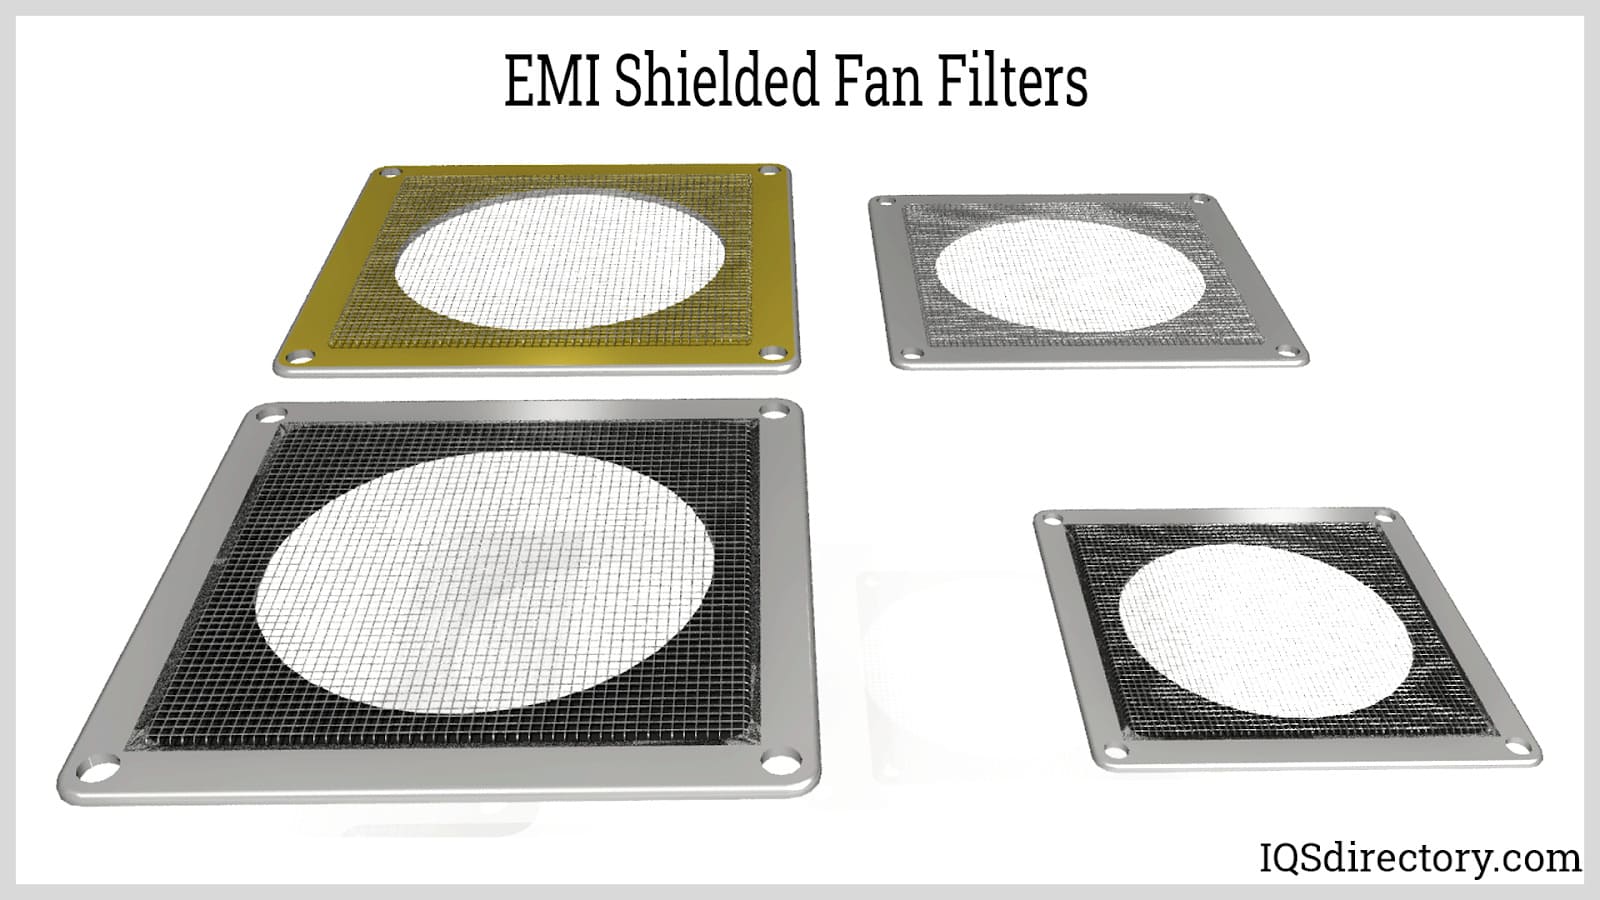 EMI Shielded Fan Filters